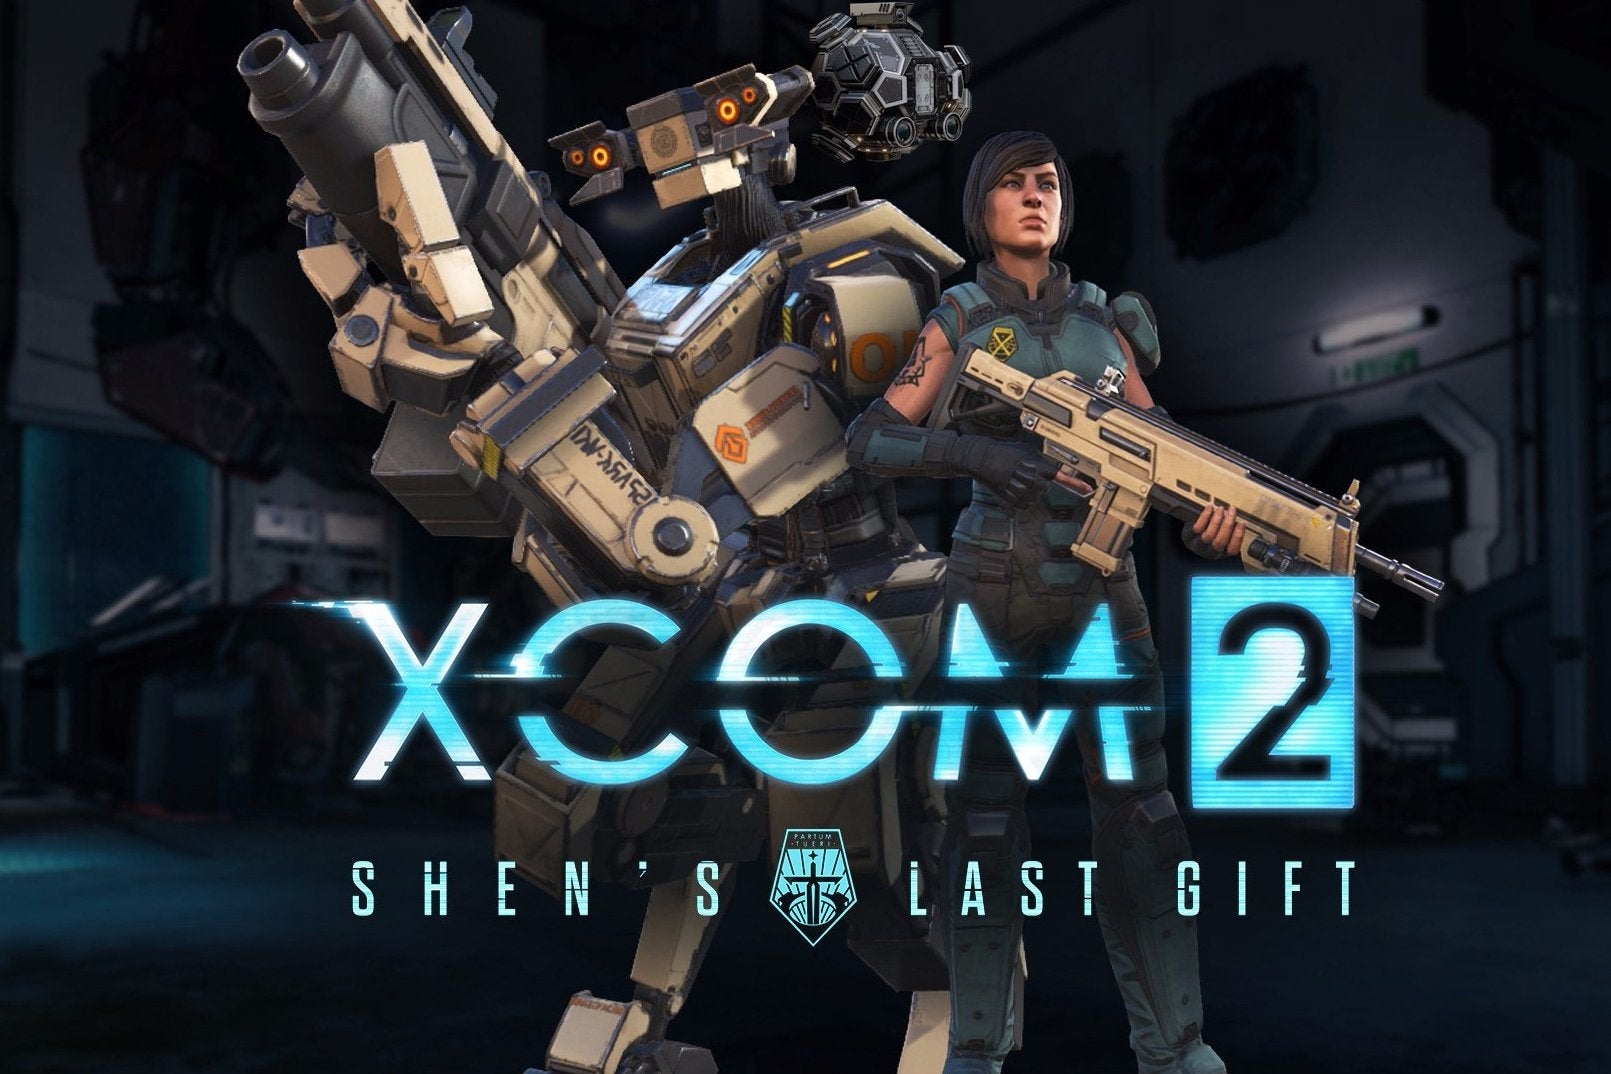 Imagen para Ya disponible el nuevo DLC de XCOM 2